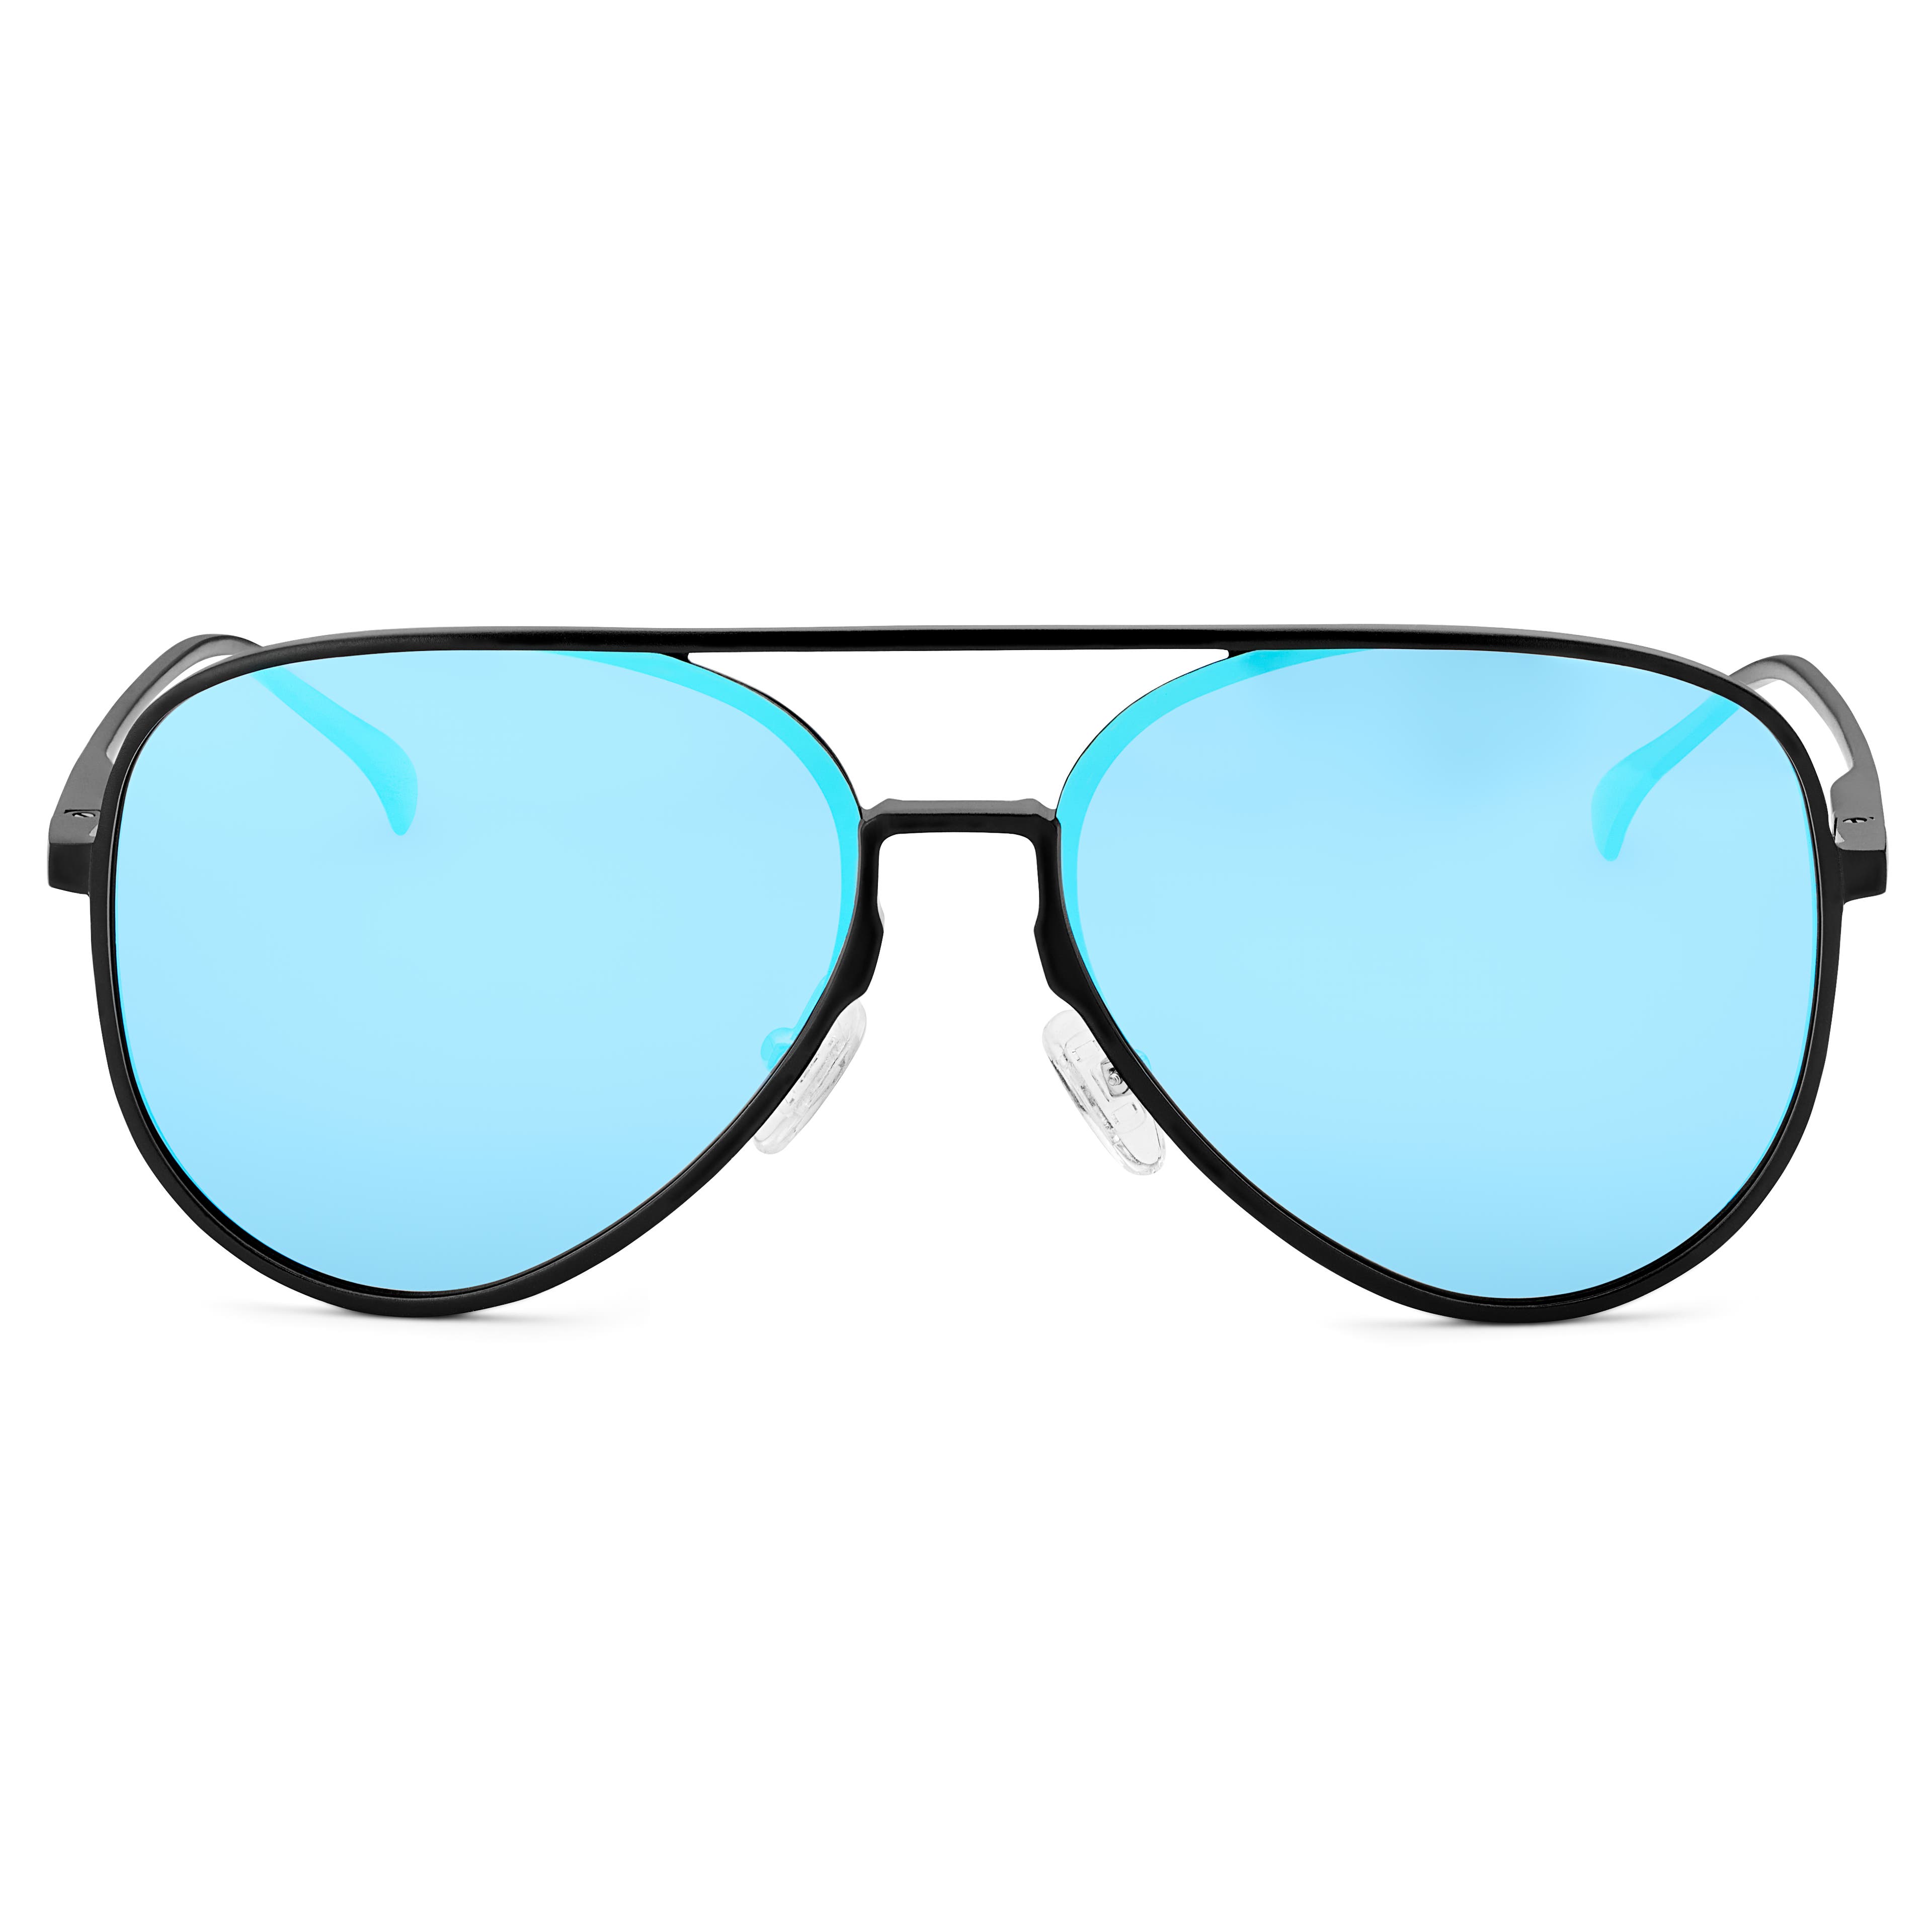 Sort med Blå Speilglass Polariserte Pilot Solbriller